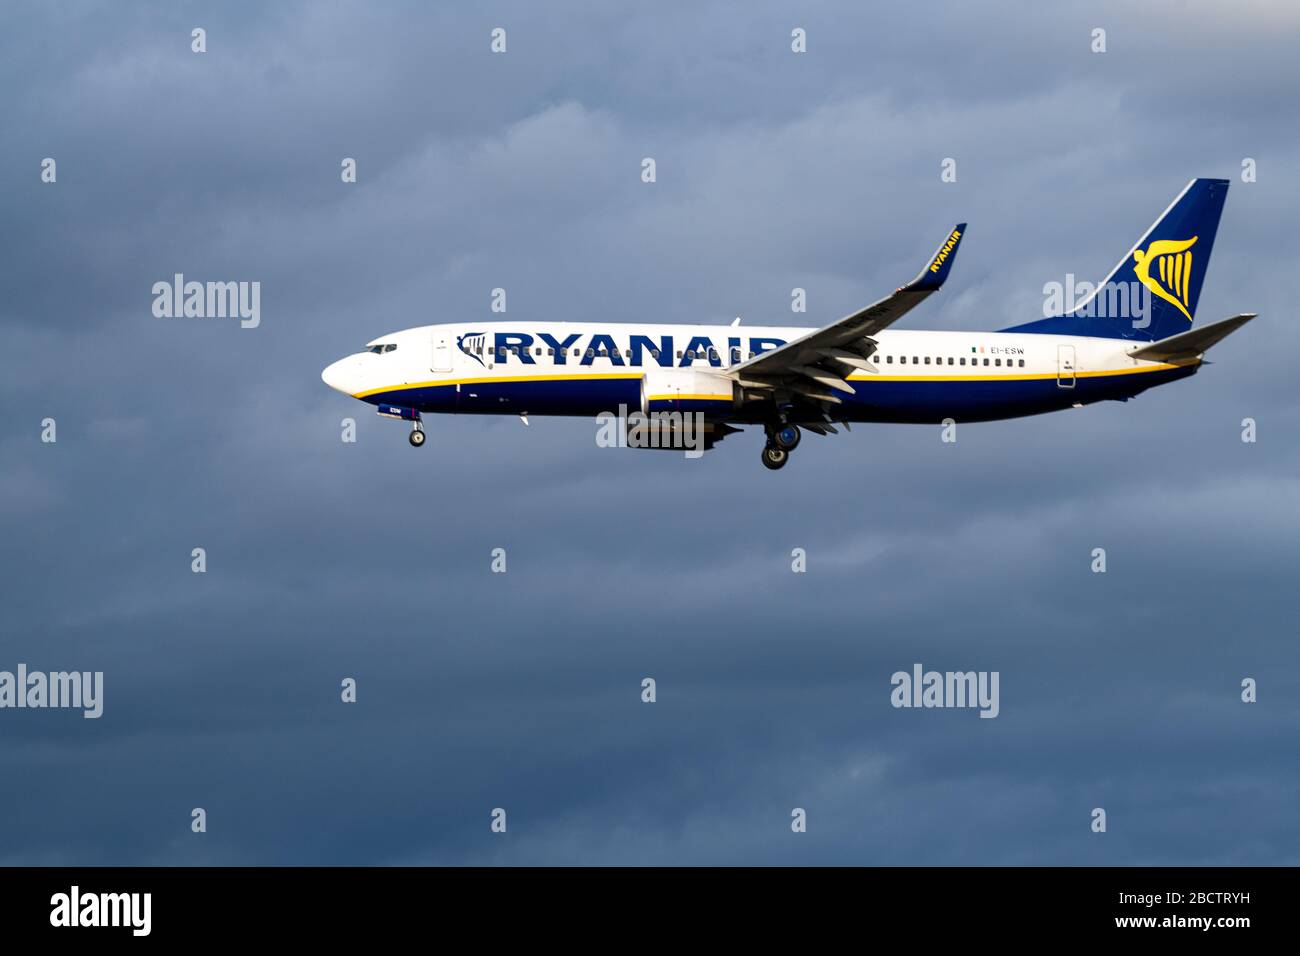 MADRID, SPAGNA - 17 MAGGIO 2019: Ryanair Boeing 737 NG / Max aereo passeggeri pronto a atterrare all'Aeroporto Internazionale Adolfo Suarez Madrid-Barajas, su un cl Foto Stock